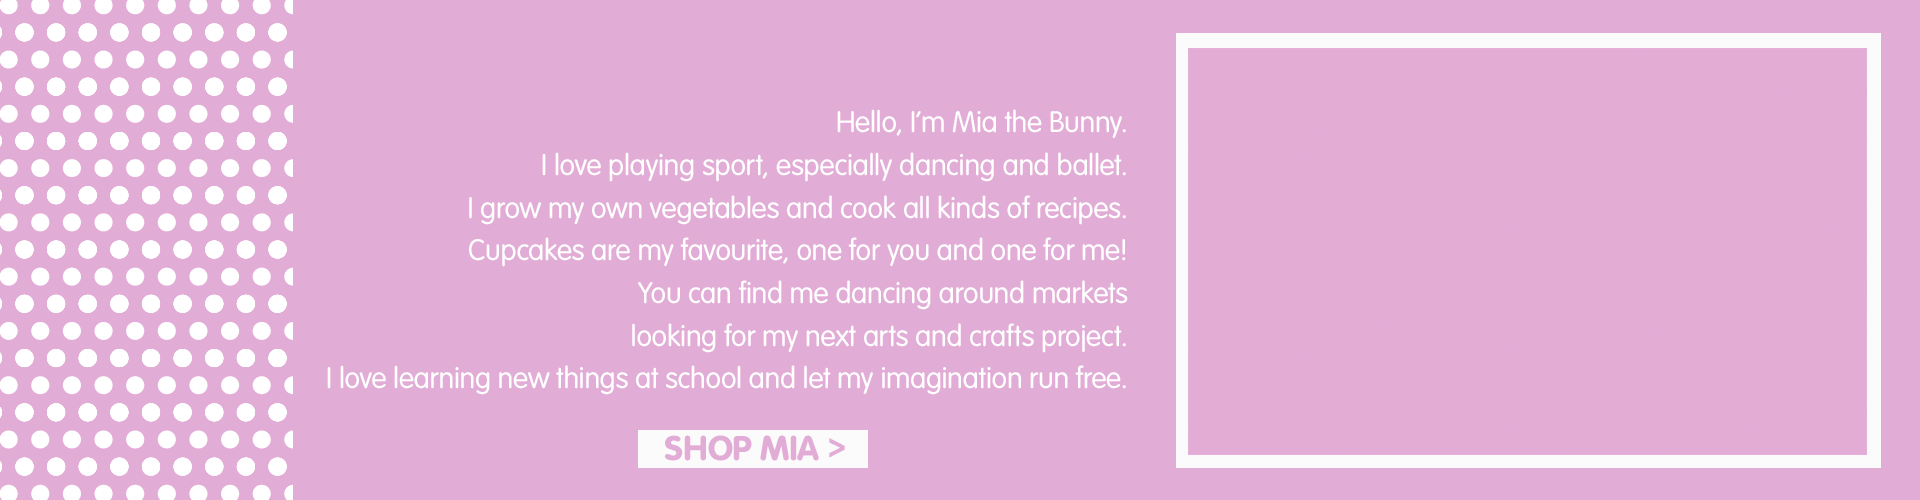 Meet Mia